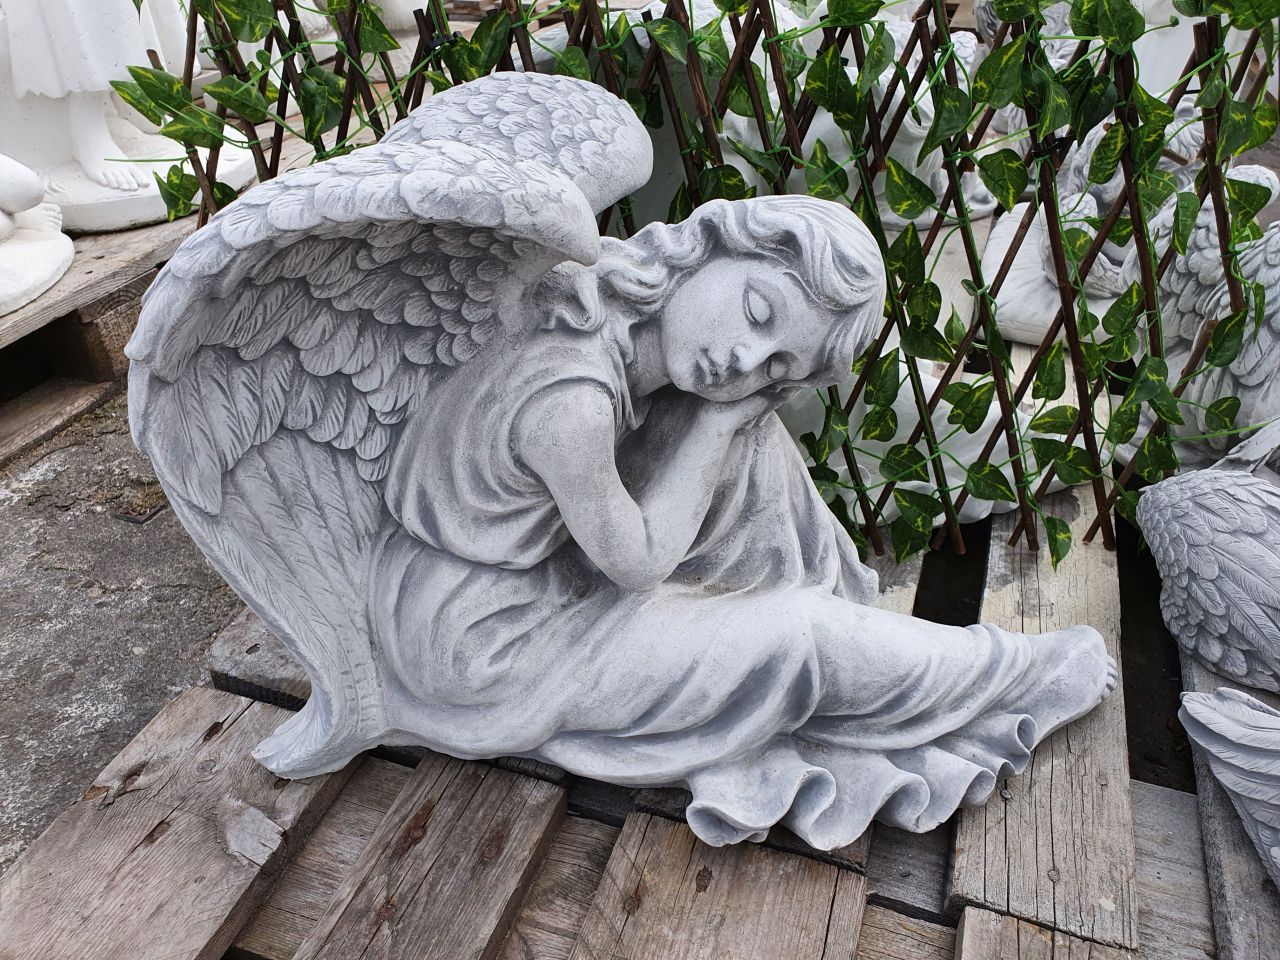 -Gartenfigur Engel an Knie angelehnt- antik grau- unter Statuen/Skulpturen Religion und Kultur